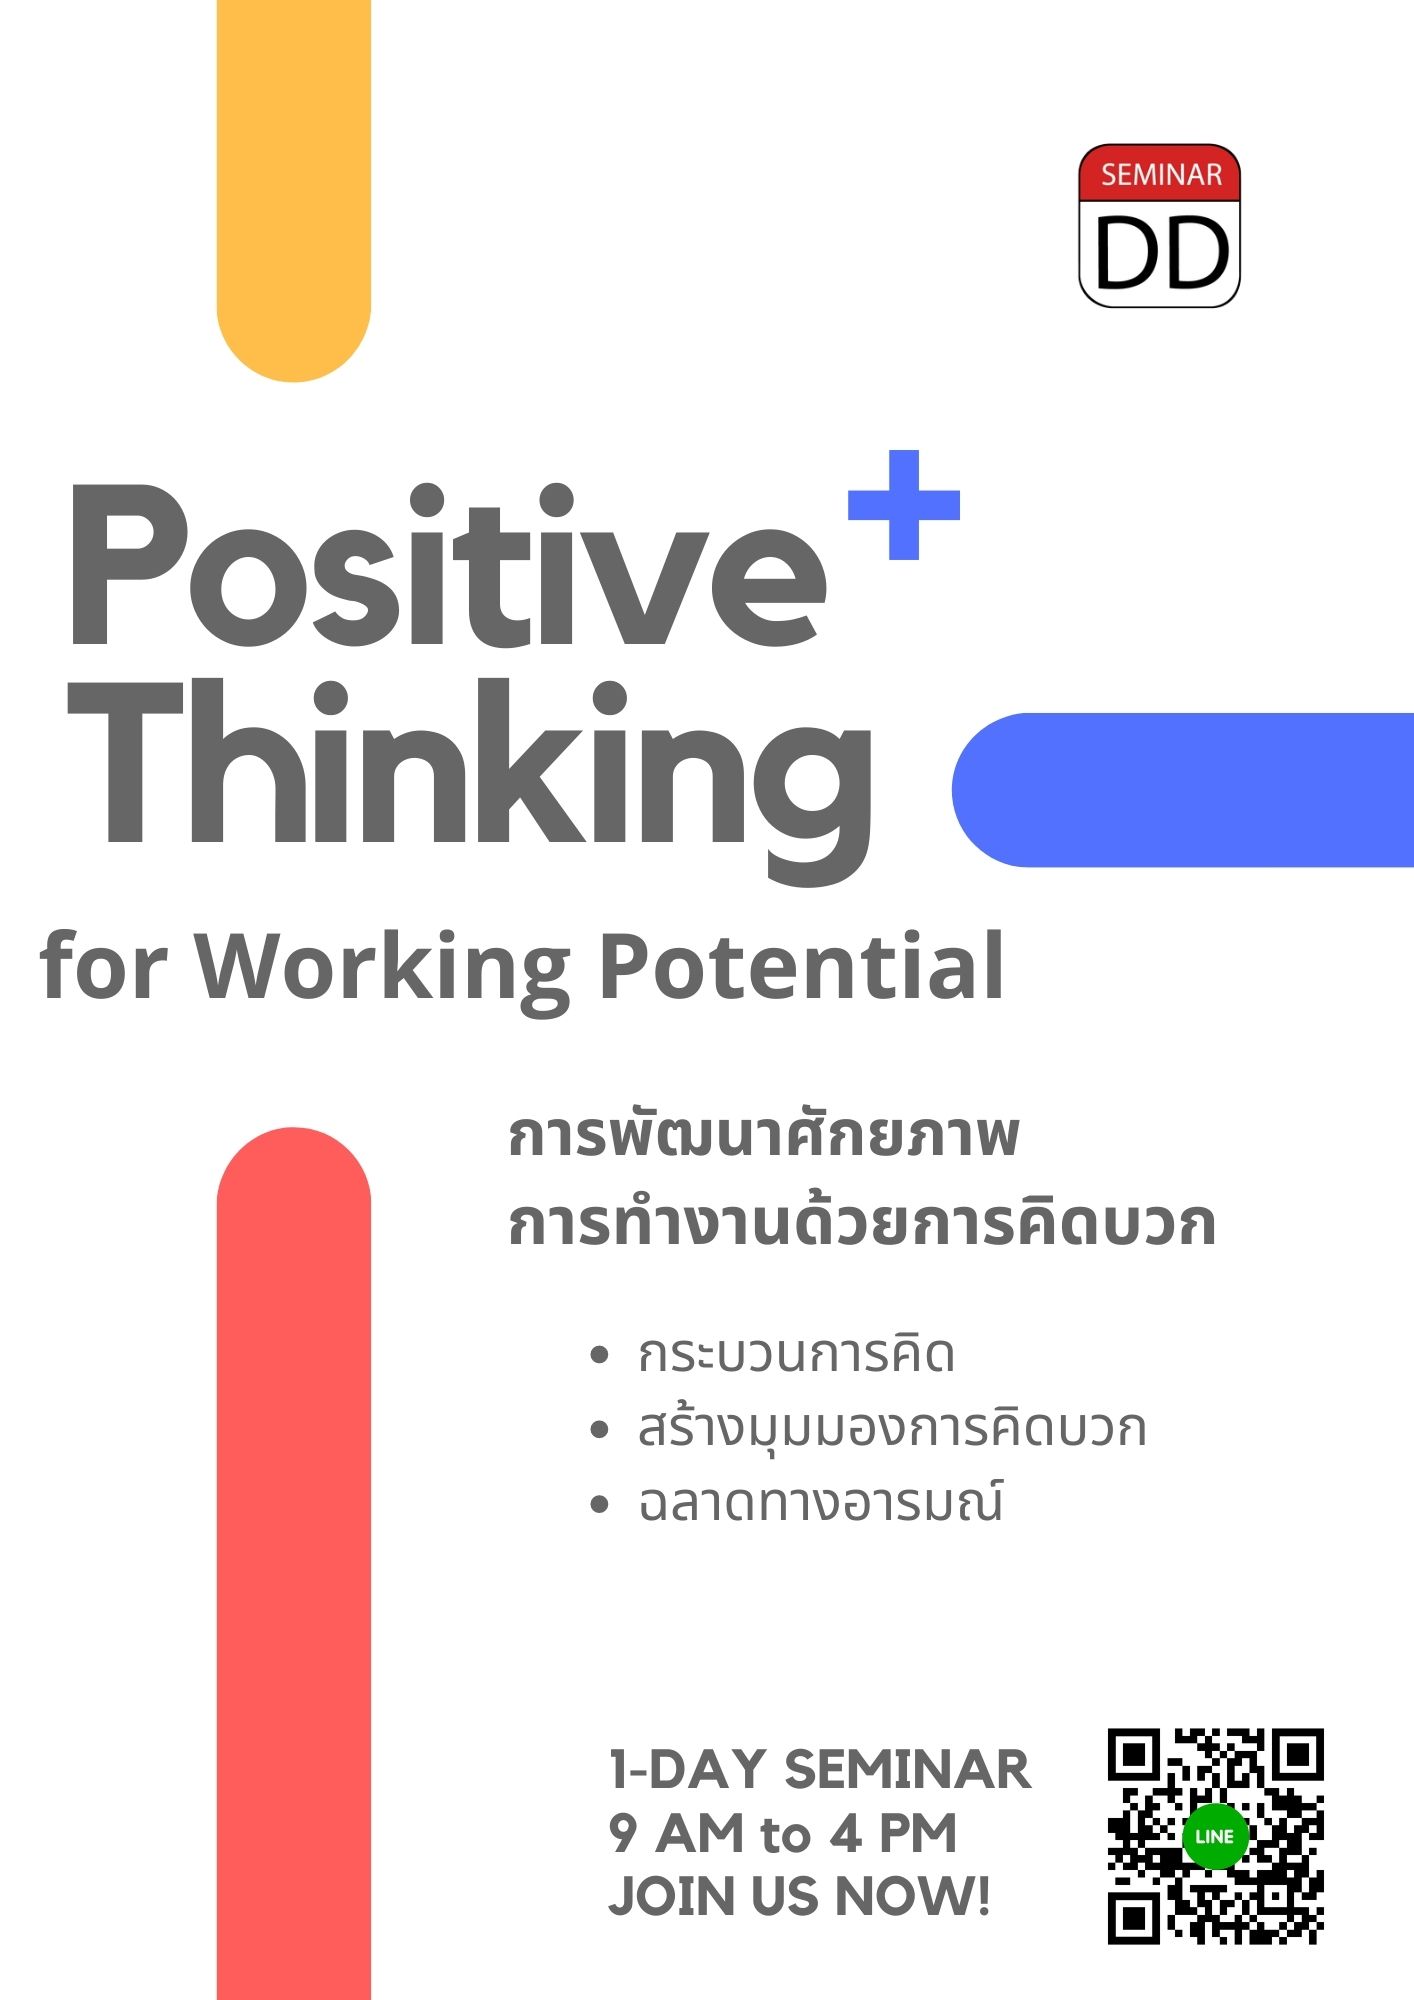 หลักสูตร การพัฒนาศักยภาพการทำงานด้วยการคิดบวก Positive Thinking for Working Potential